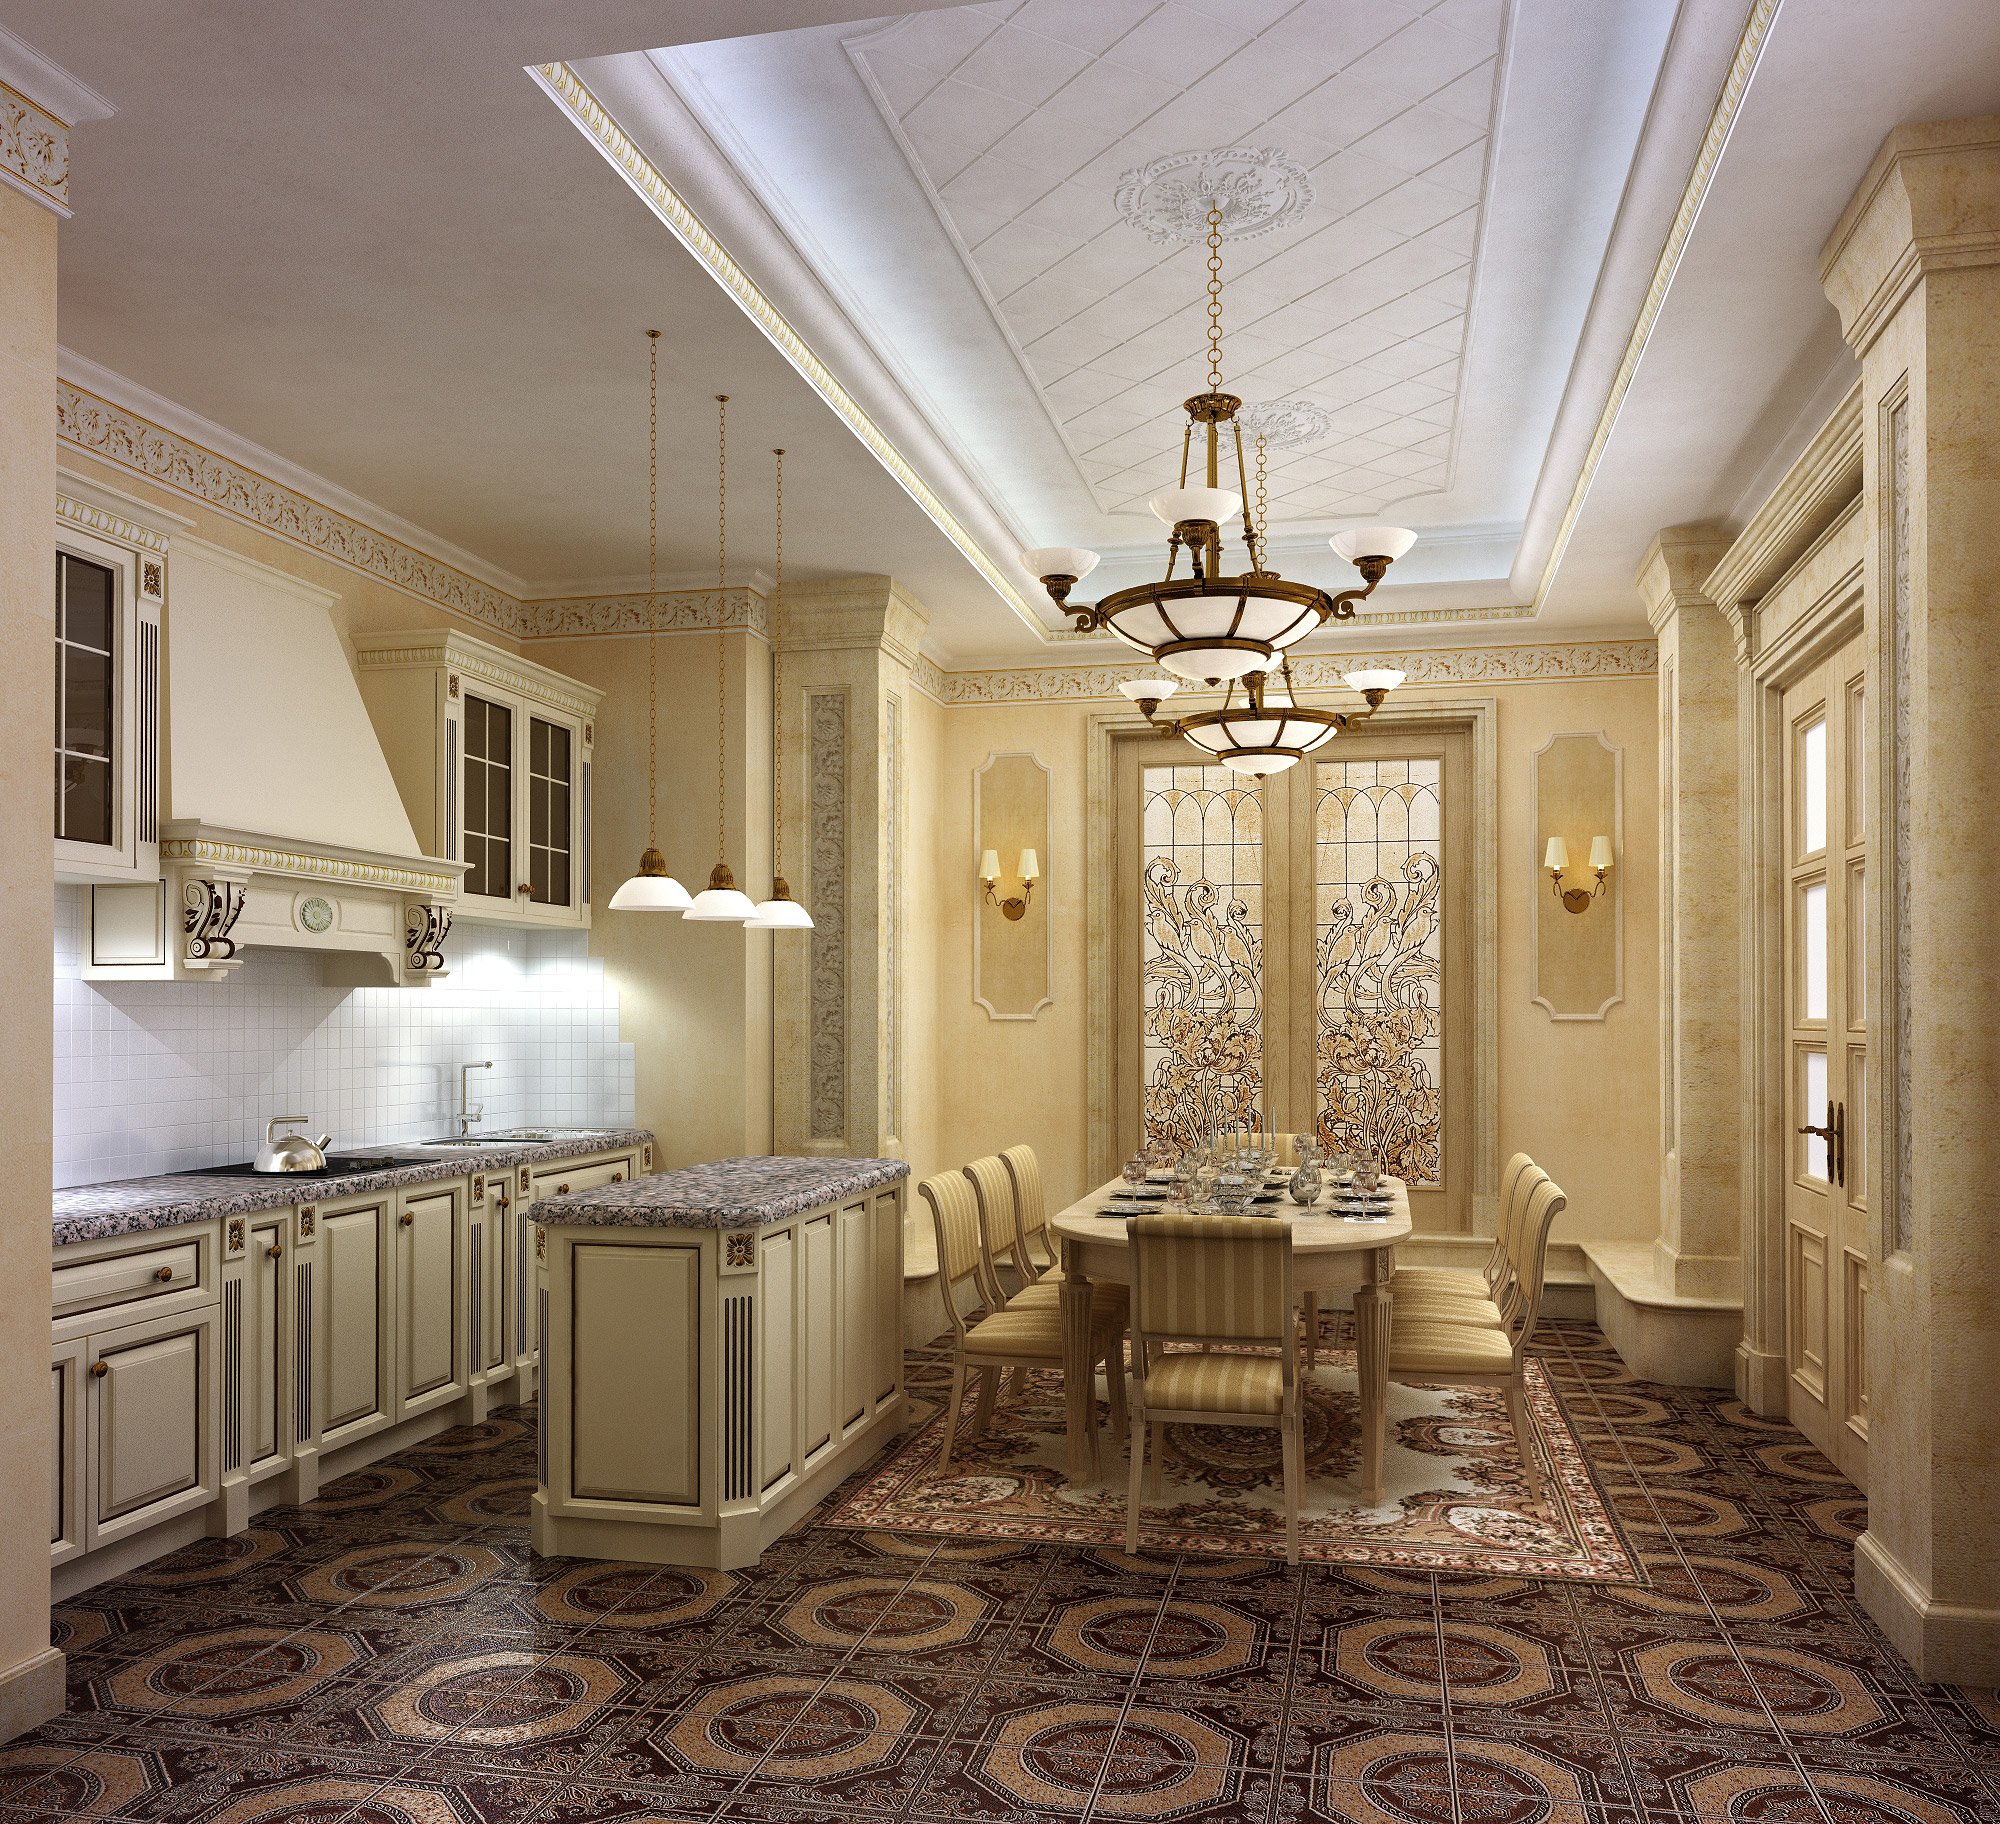 Кухни столовые в квартире. Красивые интерьеры в классическом стиле. Красивые кухни столовые. Потолок в классическом стиле. Интерьер кухни столовой.